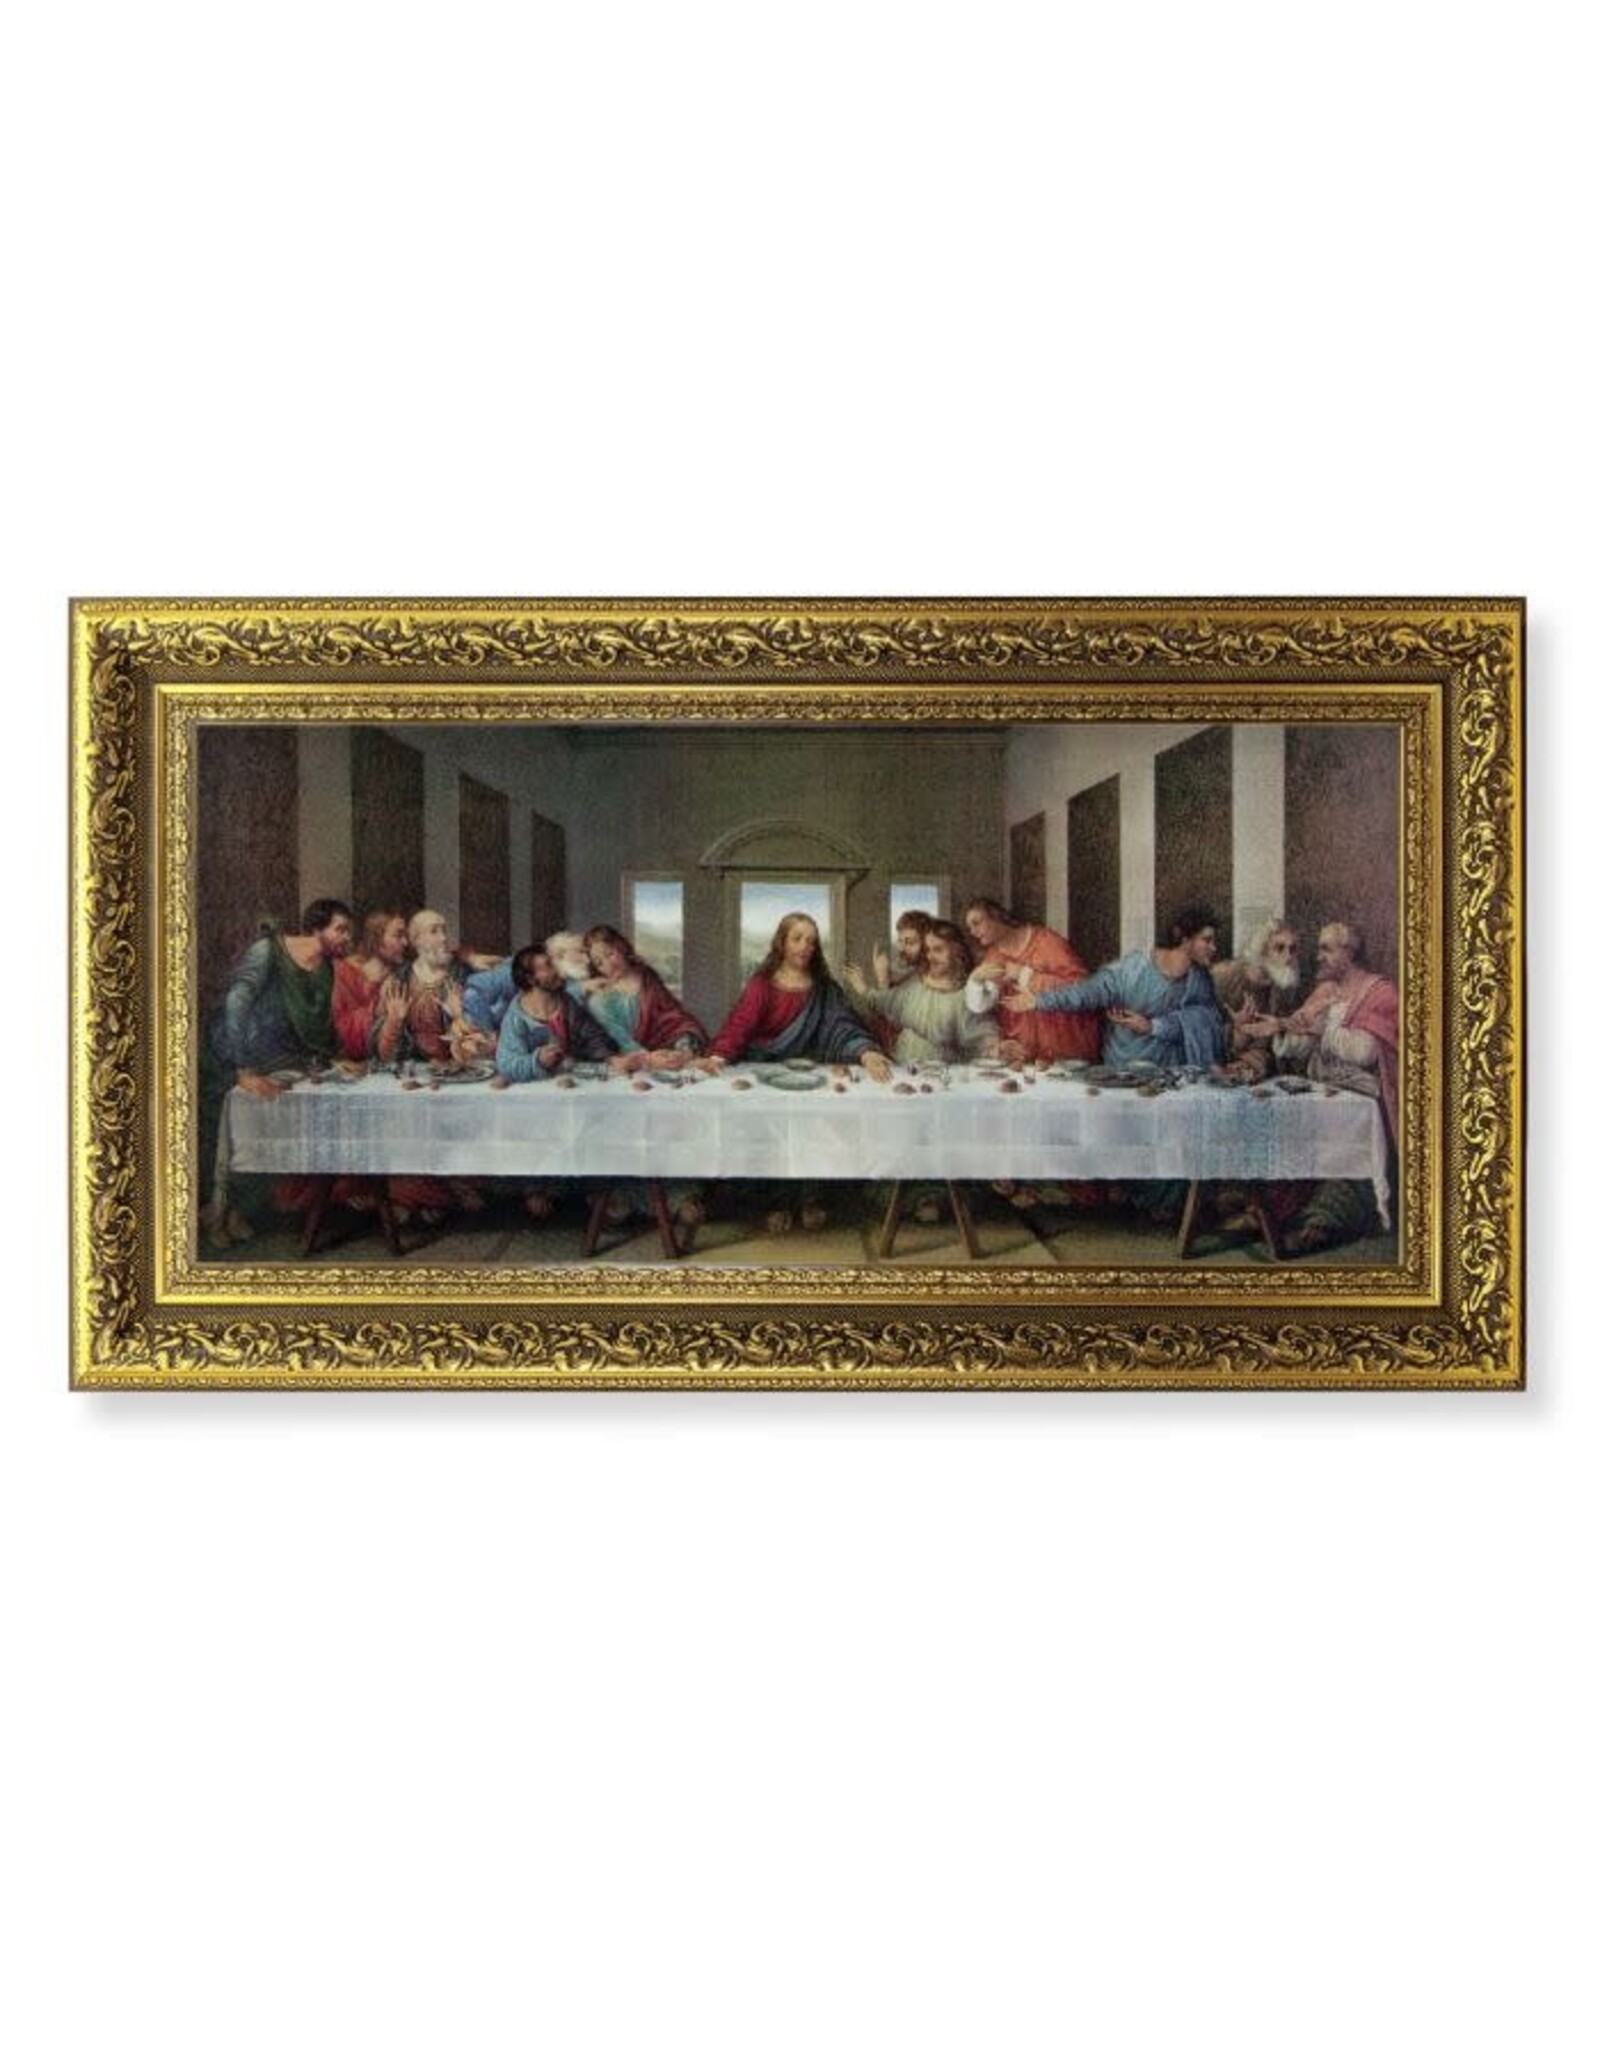 Hirten Last Supper Picture - Ornate Gold Leaf Wood Frame, Da Vinci (11-5/8 x 19")